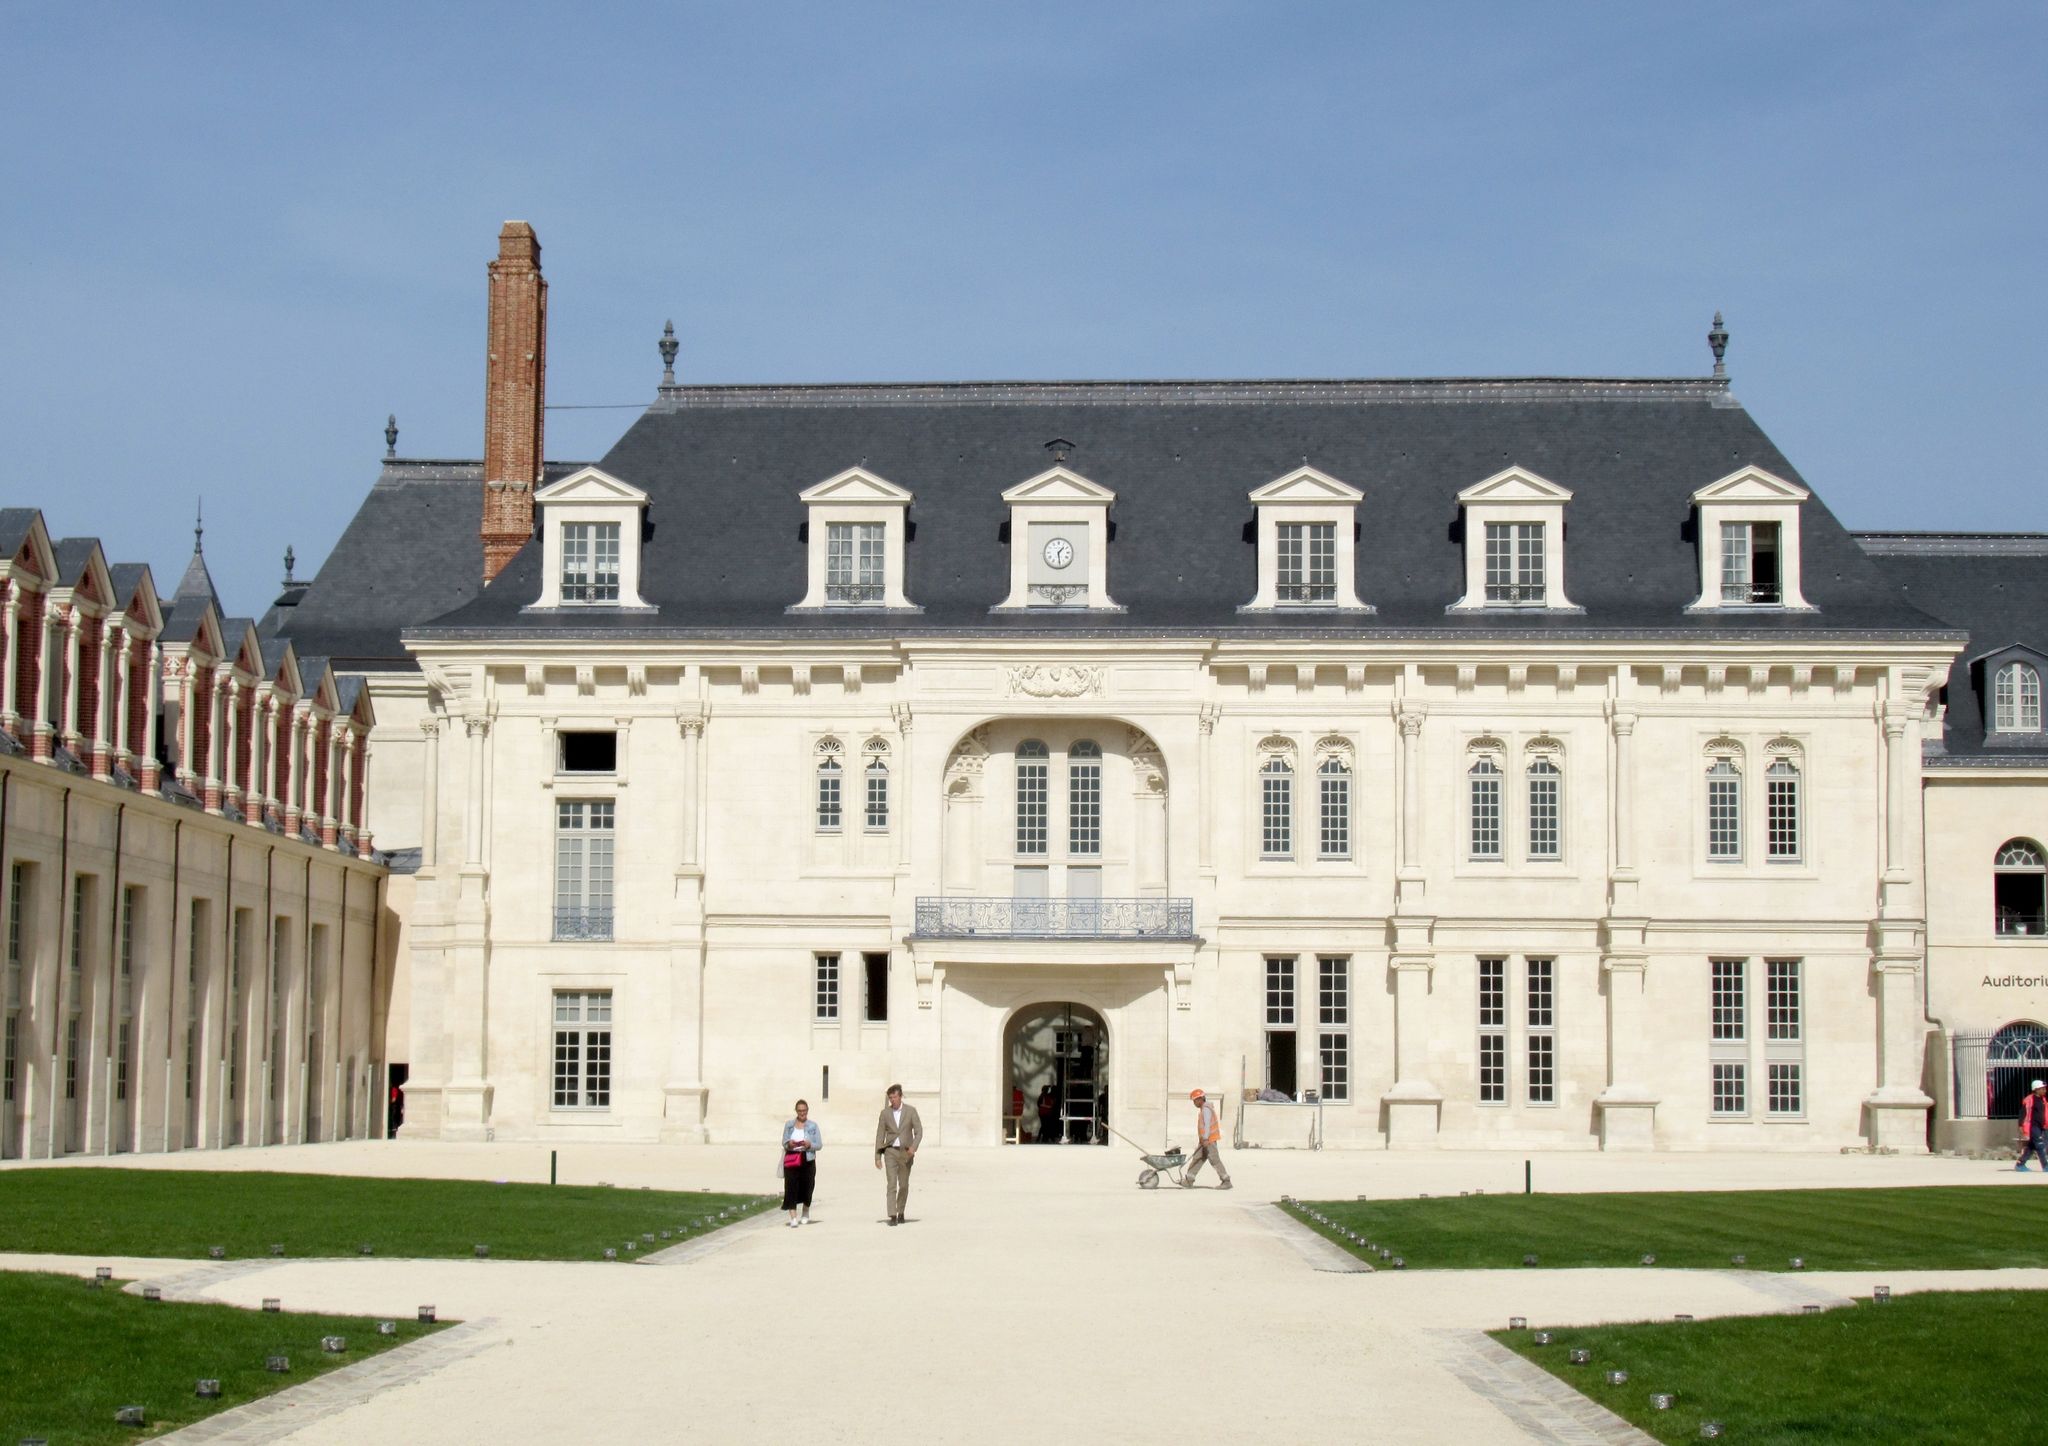 Das erste Museum für französische Sprache mit Sitz im Schloss von Villers-Cotterets öffnet.